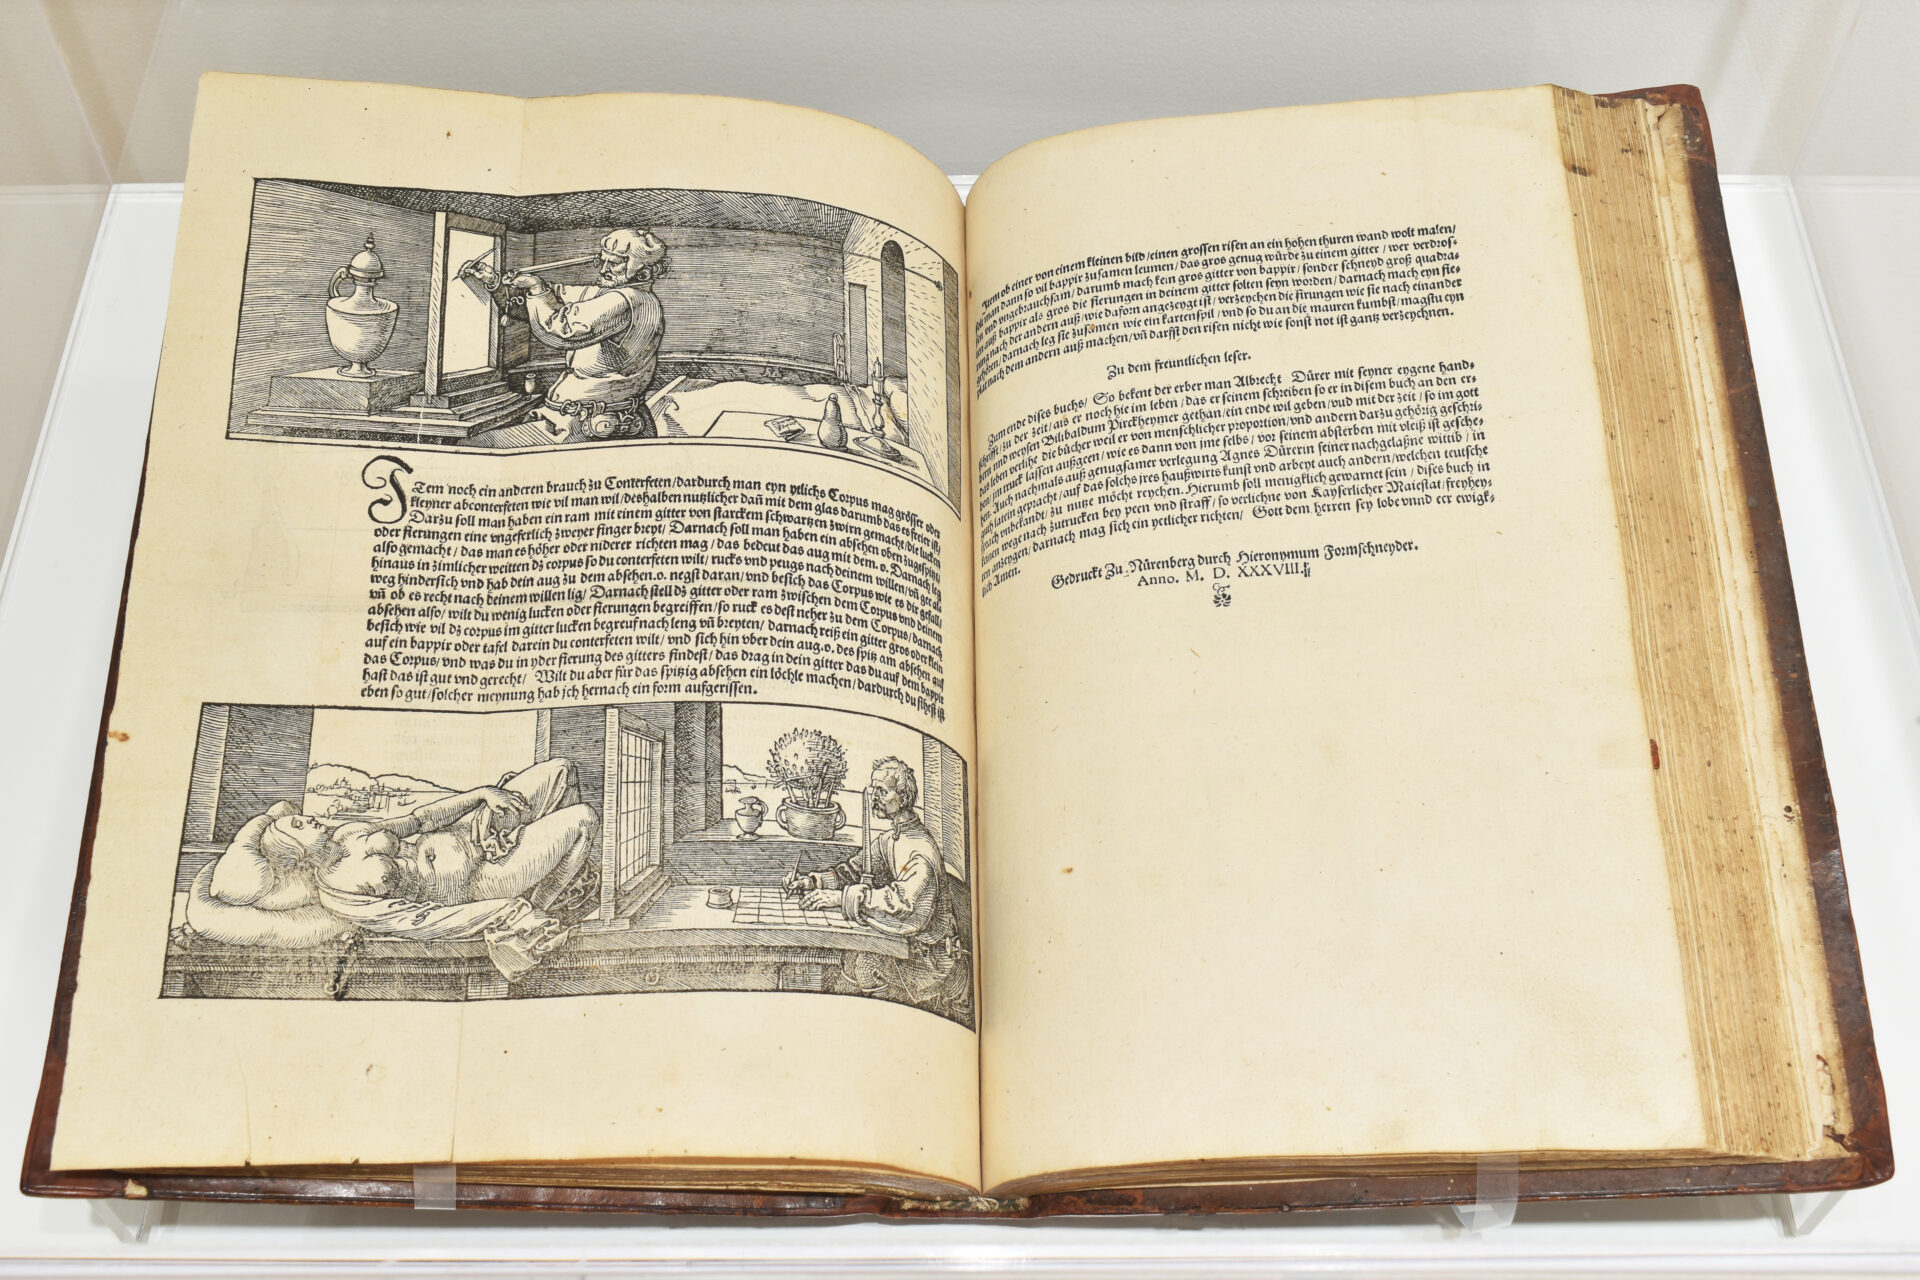 Albrecht Dürer, (1471-1528), Vier Bücher von Menschlicher Proportion, 1528, Nuremberg Book with woodcuts and text, 12 1/16 x 8 1⁄4 x 1 1/8” (30.6 x 21 x 2.8 cm)